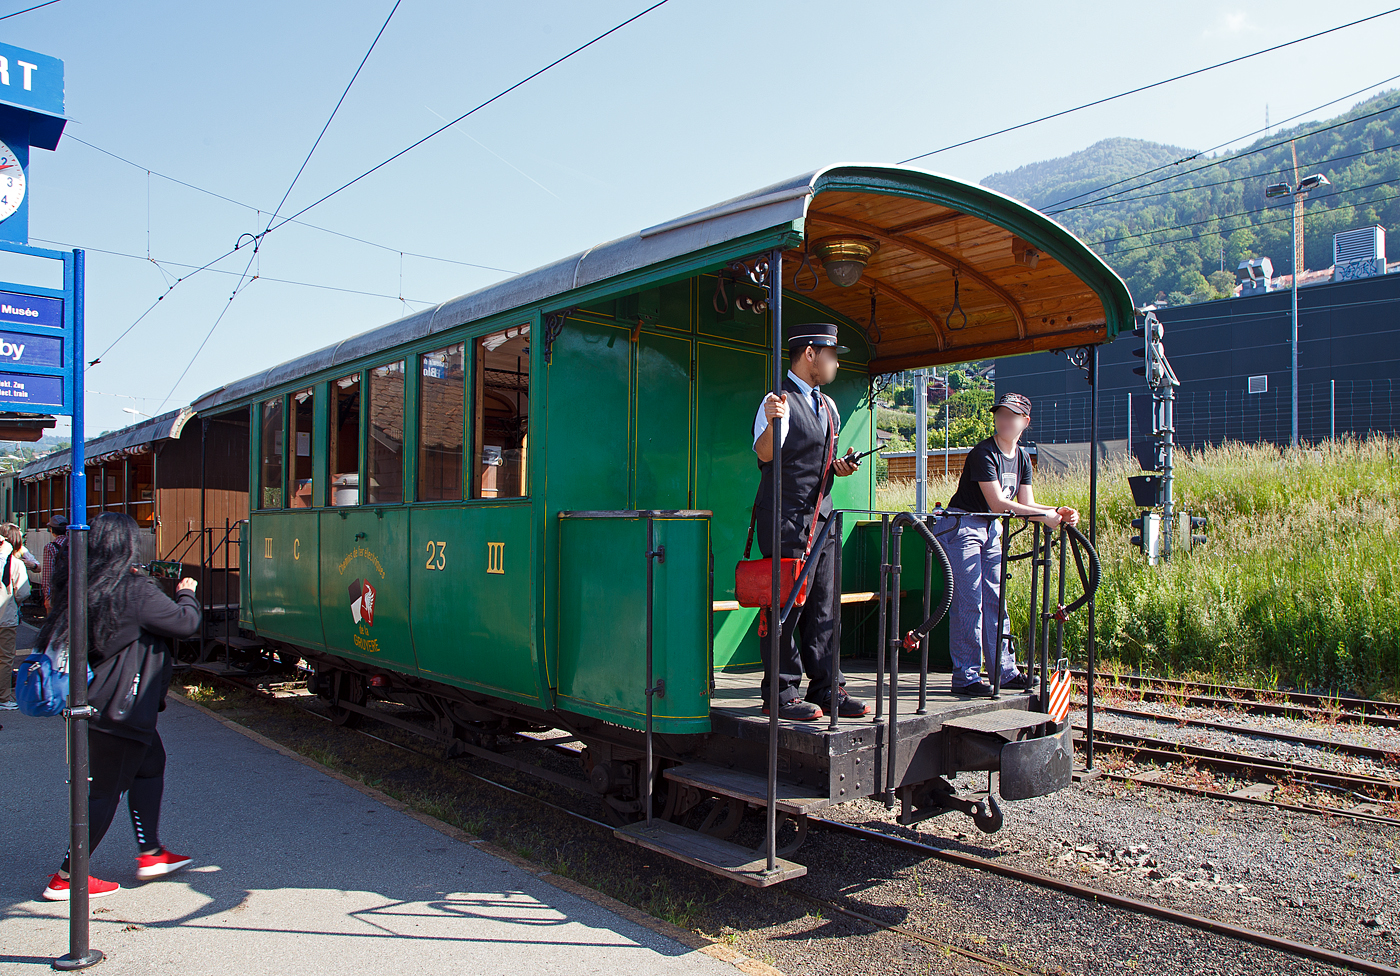 Die Lok muss nun ans andere Ende vom Zug, so wird der Wagenzug wieder etwas hochgedrckt.

Der zweiachsige 3. Klasse Personenwagen mit offenen Plattformen (Plattformwagen) ex CEG C 23 (Chemins de fer Electriques de la Gruyre, ab 1942 GFM - Chemins de fer fribourgeois Gruyre–Fribourg–Morat) der Museumsbahn Blonay-Chamby am 27.05.2023 im Zugverband im Bahnhof Blonay.

Der Wagen wurde 1903 von der SWS (Schweizerische Wagons- und Aufzgefabrik AG, Schlieren) fr die Chemins de fer lectriques Veveysans (CEG) gebaut und als CEG C 23 geliefert. Im Jahr 1967 ging der Wagen an die Museumsbahn Blonay-Chamby.

Die Chemins de fer lectriques de la Gruyre schloss sich 1942 mit den beiden Normalspurbahnen FMA und BR zur GMF (Chemins de fer fribourgeois Gruyre–Fribourg–Morat) zusammen. Seit 2000 nun TPF (Transports publics fribourgeois SA / Freiburgische Verkehrsbetriebe AG).

TECHNISCHE DATEN:
Baujahr: 1903
Hersteller: SWS Schlieren (Schweizerische Wagons- und Aufzgefabrik AG)
Spurweite: 1.000 mm (Meterspur)
Achsanzahl: 2
Lnge ber Puffer: 8.900 mm
Lnge Wagenkasten: 7.900 mm (mit Plattformen)
Achsabstand: 4.300 mm
Eigengewicht: 7,3 t
Sitzpltze: 23 in der 3. Klasse